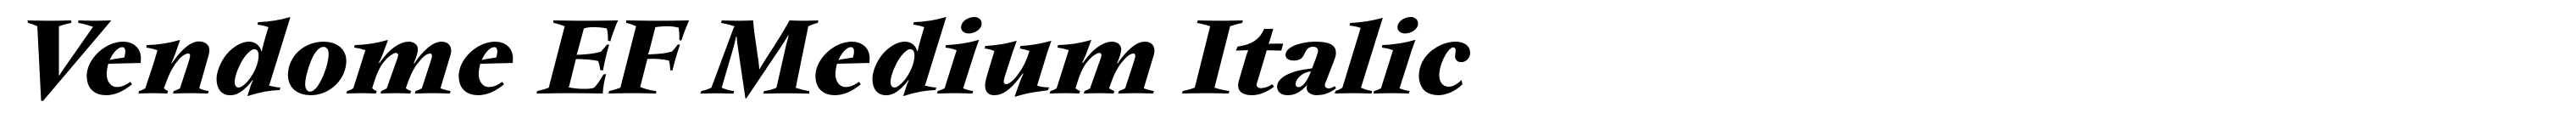 Vendome EF Medium Italic